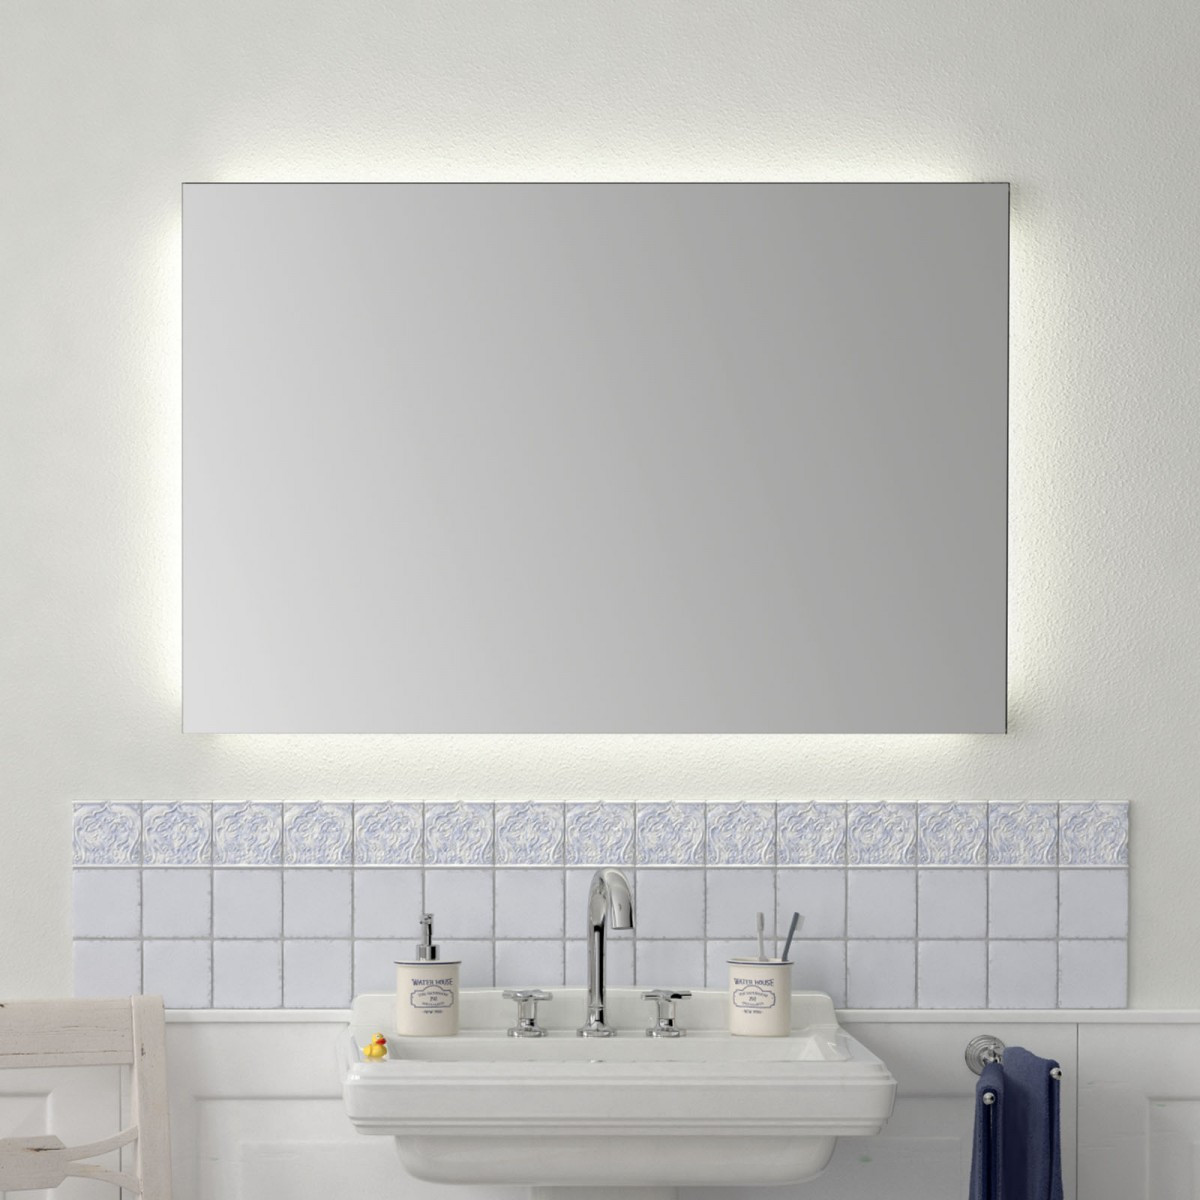 Badspiegel Nach Maß
 Badspiegel LED nach Maß Fine